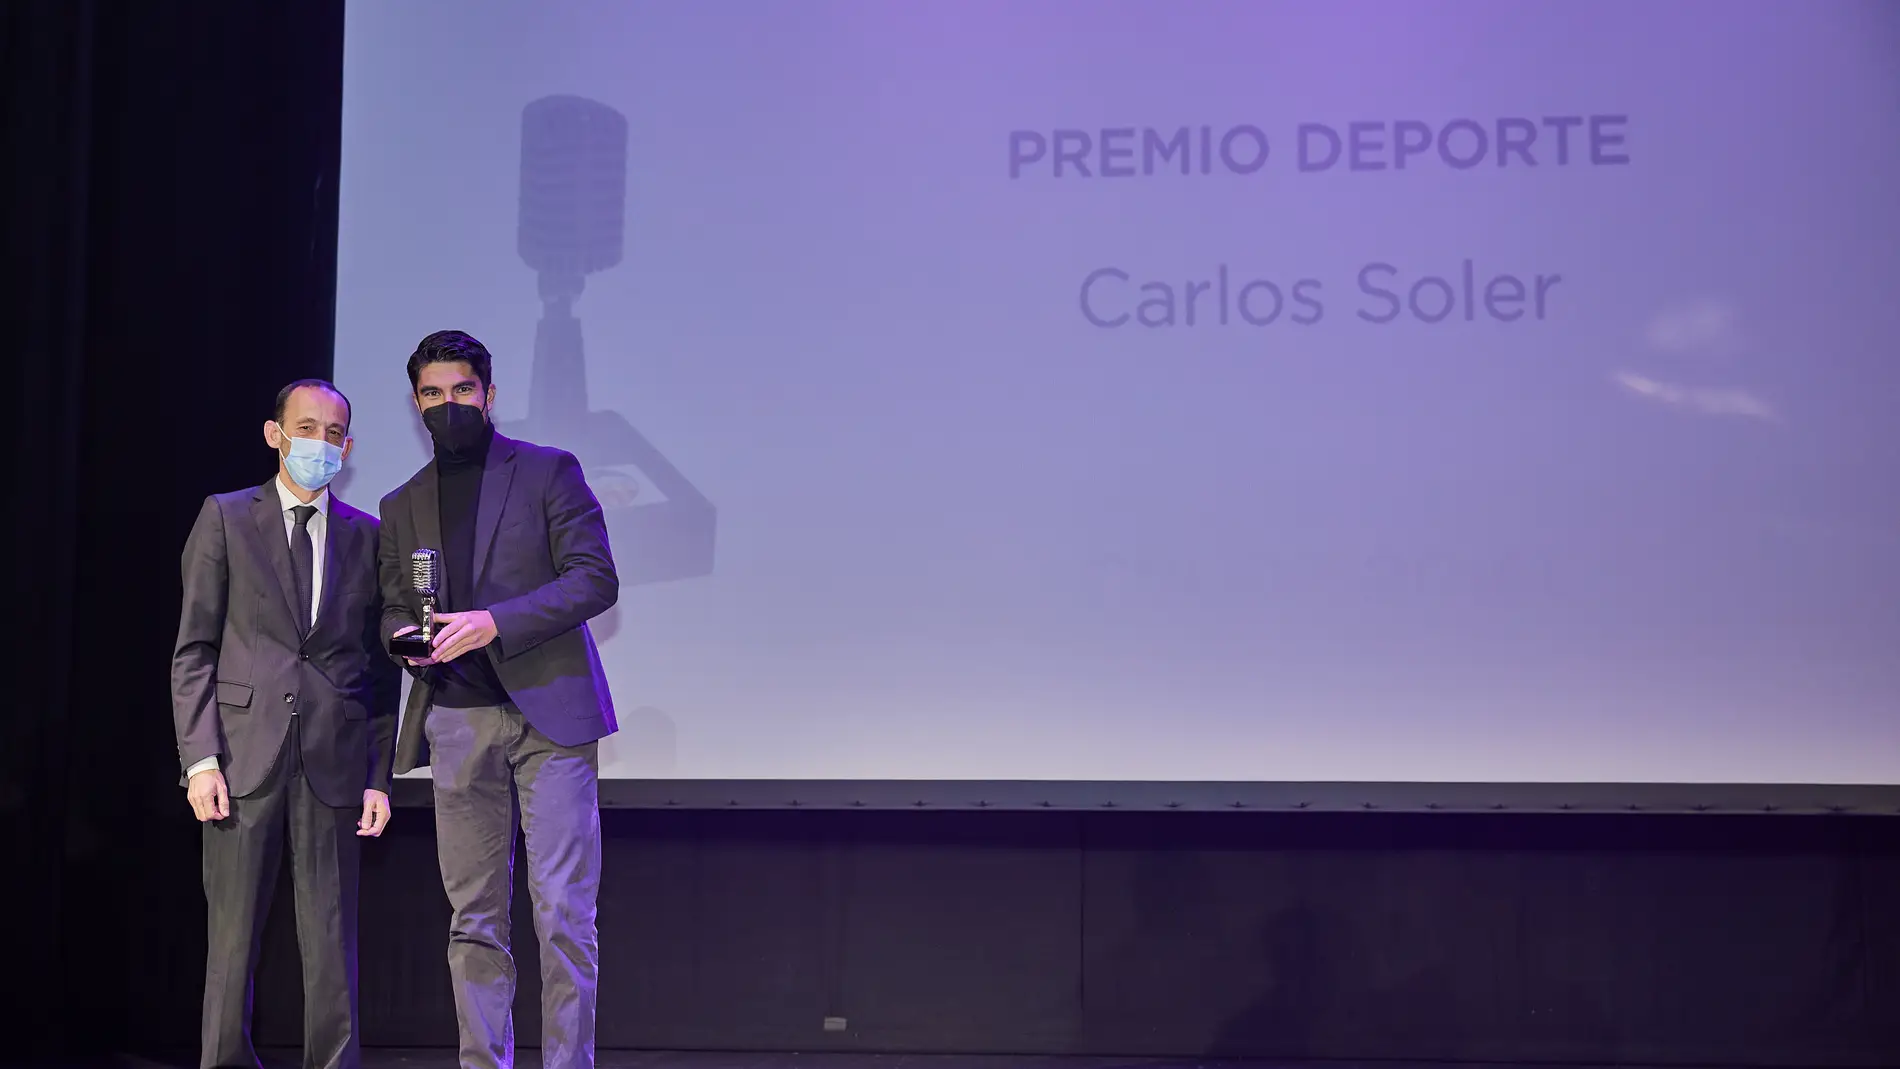 Carlos Soler recibe el premio de deportes 